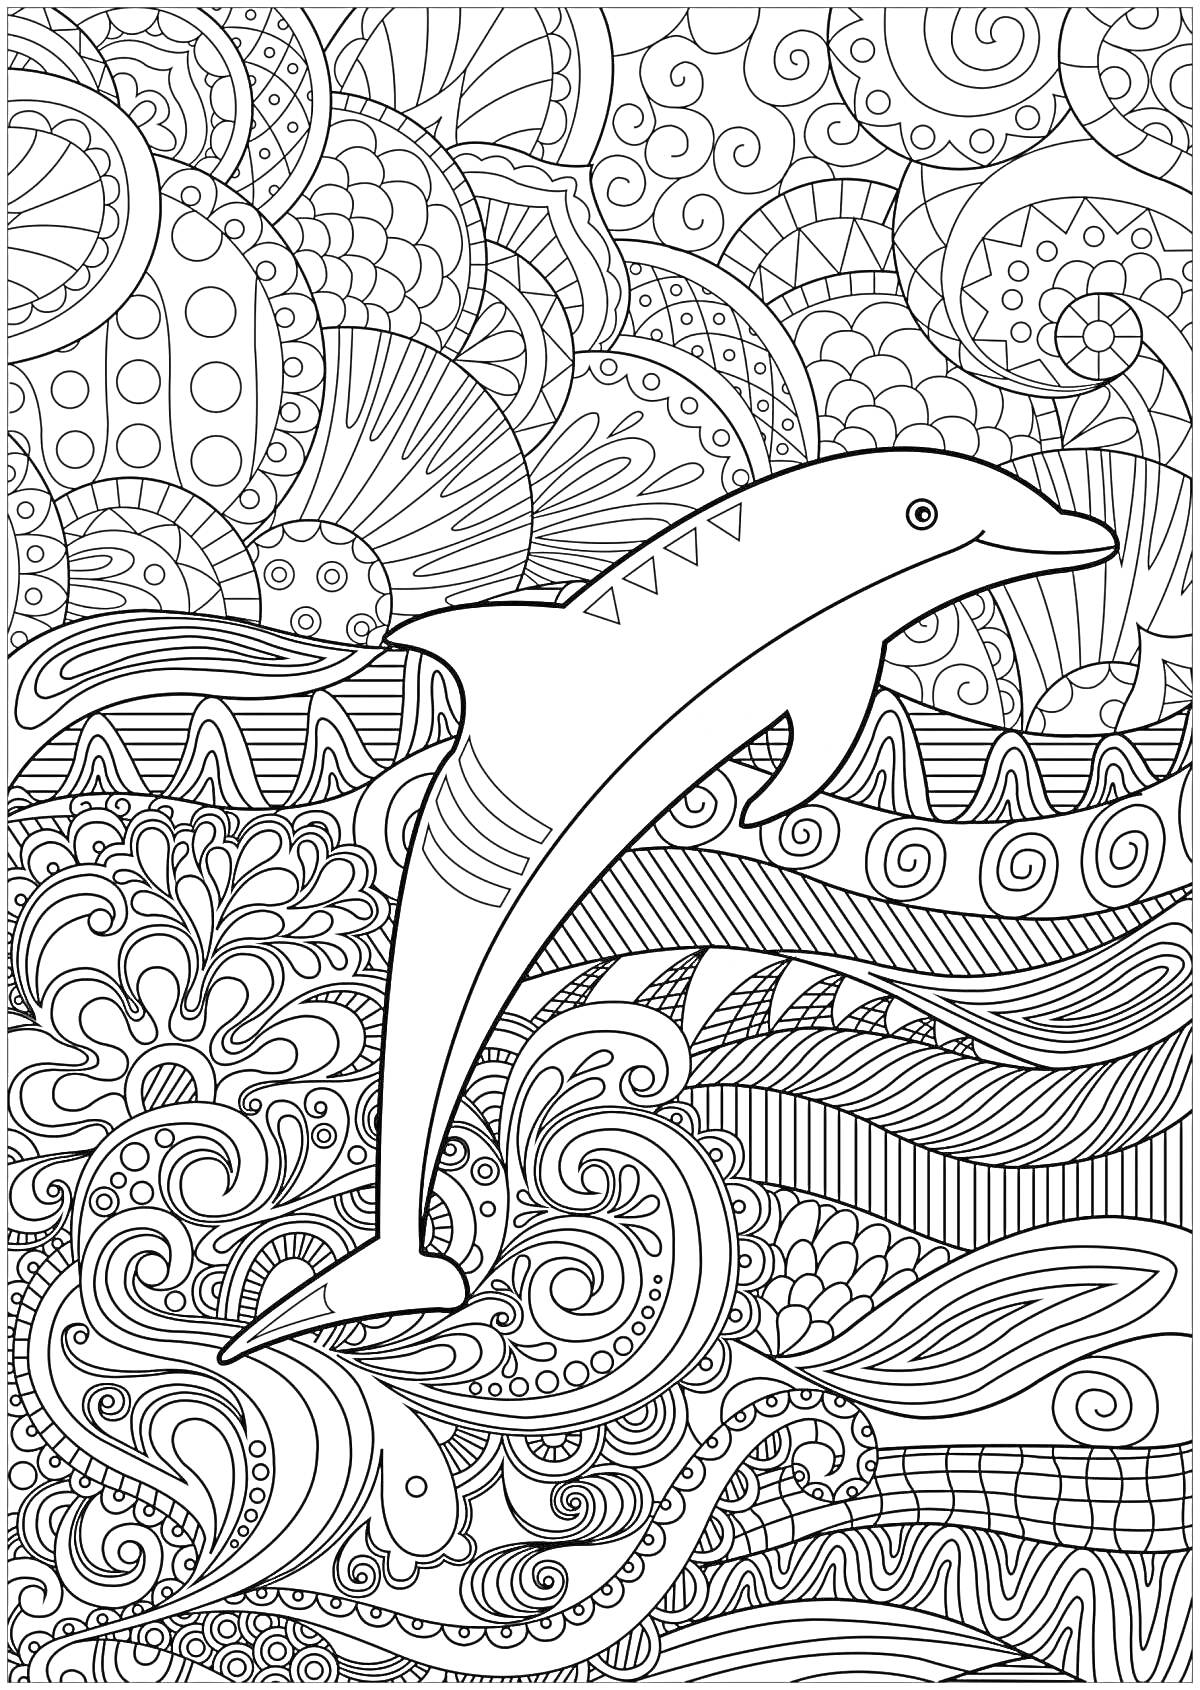 Раскраска Дельфин, прыгающий через узорное море с абстрактными волнами и морскими элементами